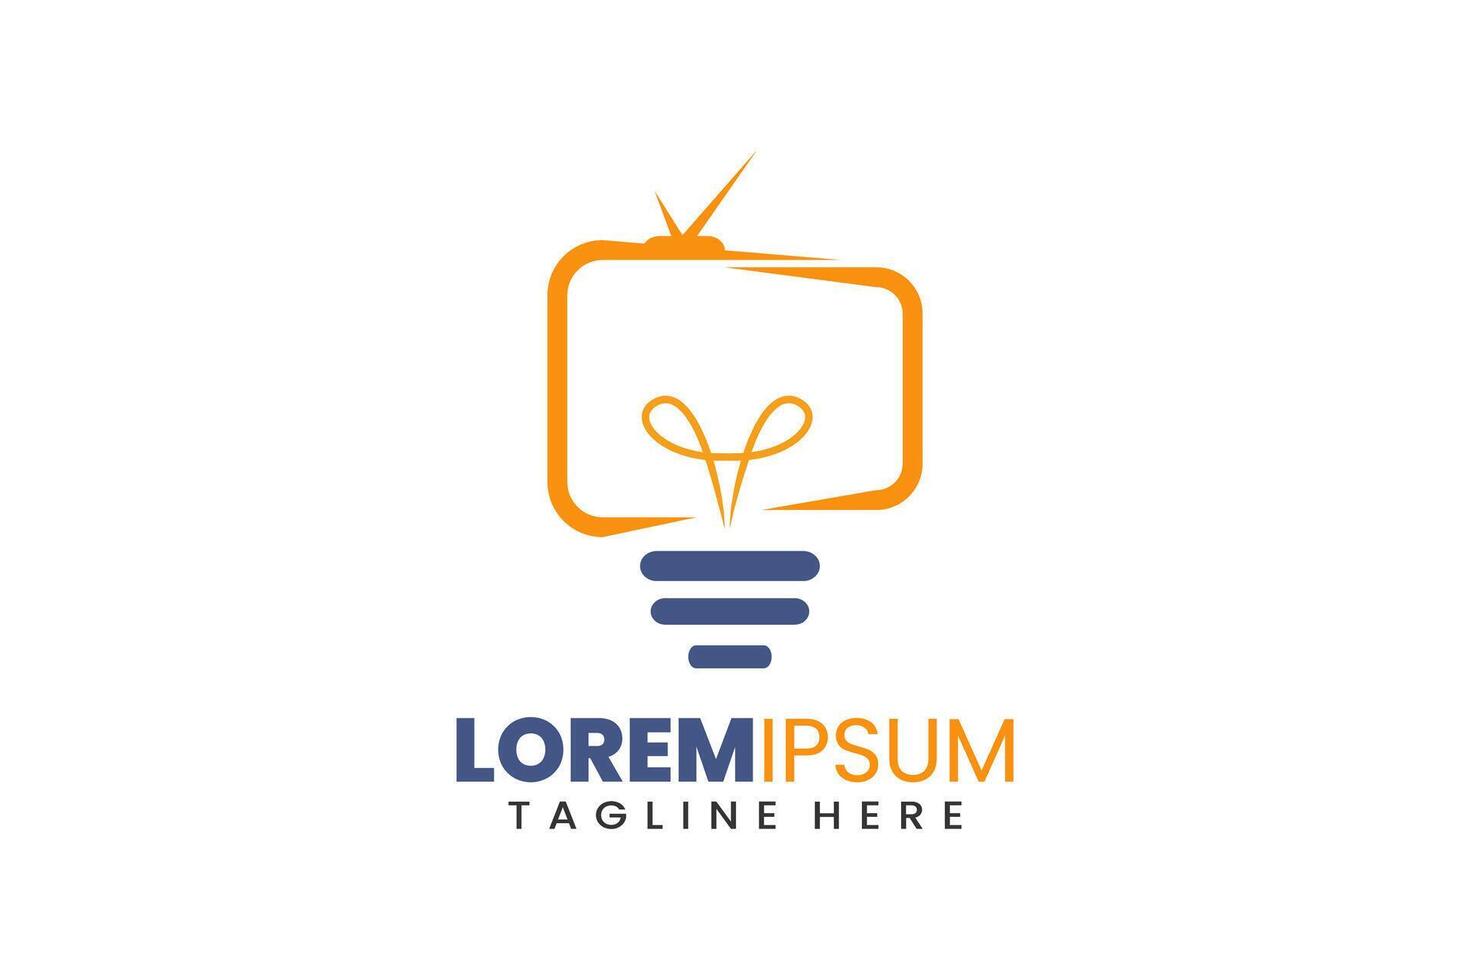 lampe télévision moderne plat unique logo modèle et minimaliste télévision ampoule logo modèle conception vecteur